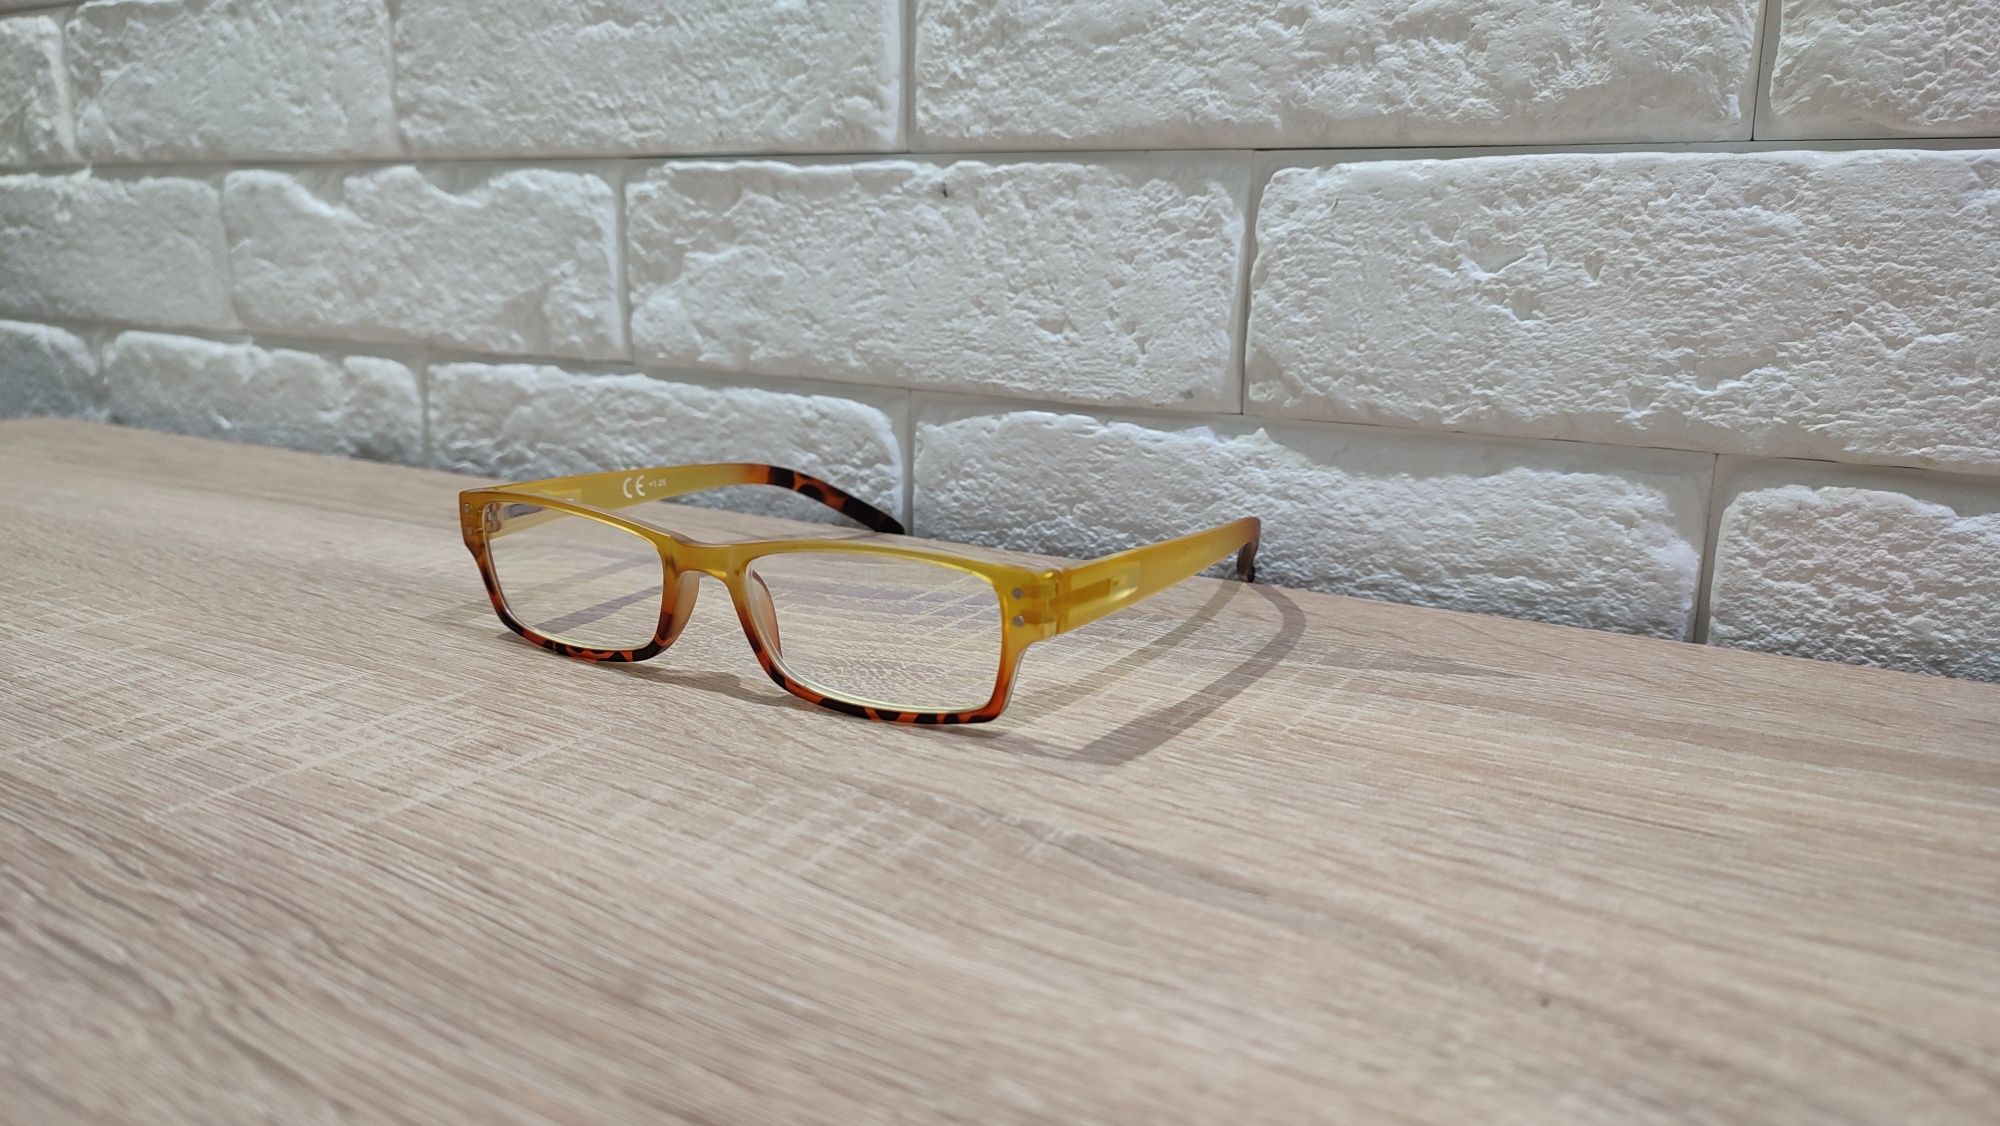 HIT Solidne okulary przeciwsłoneczne korekcyjne plusy +1.25 z etui